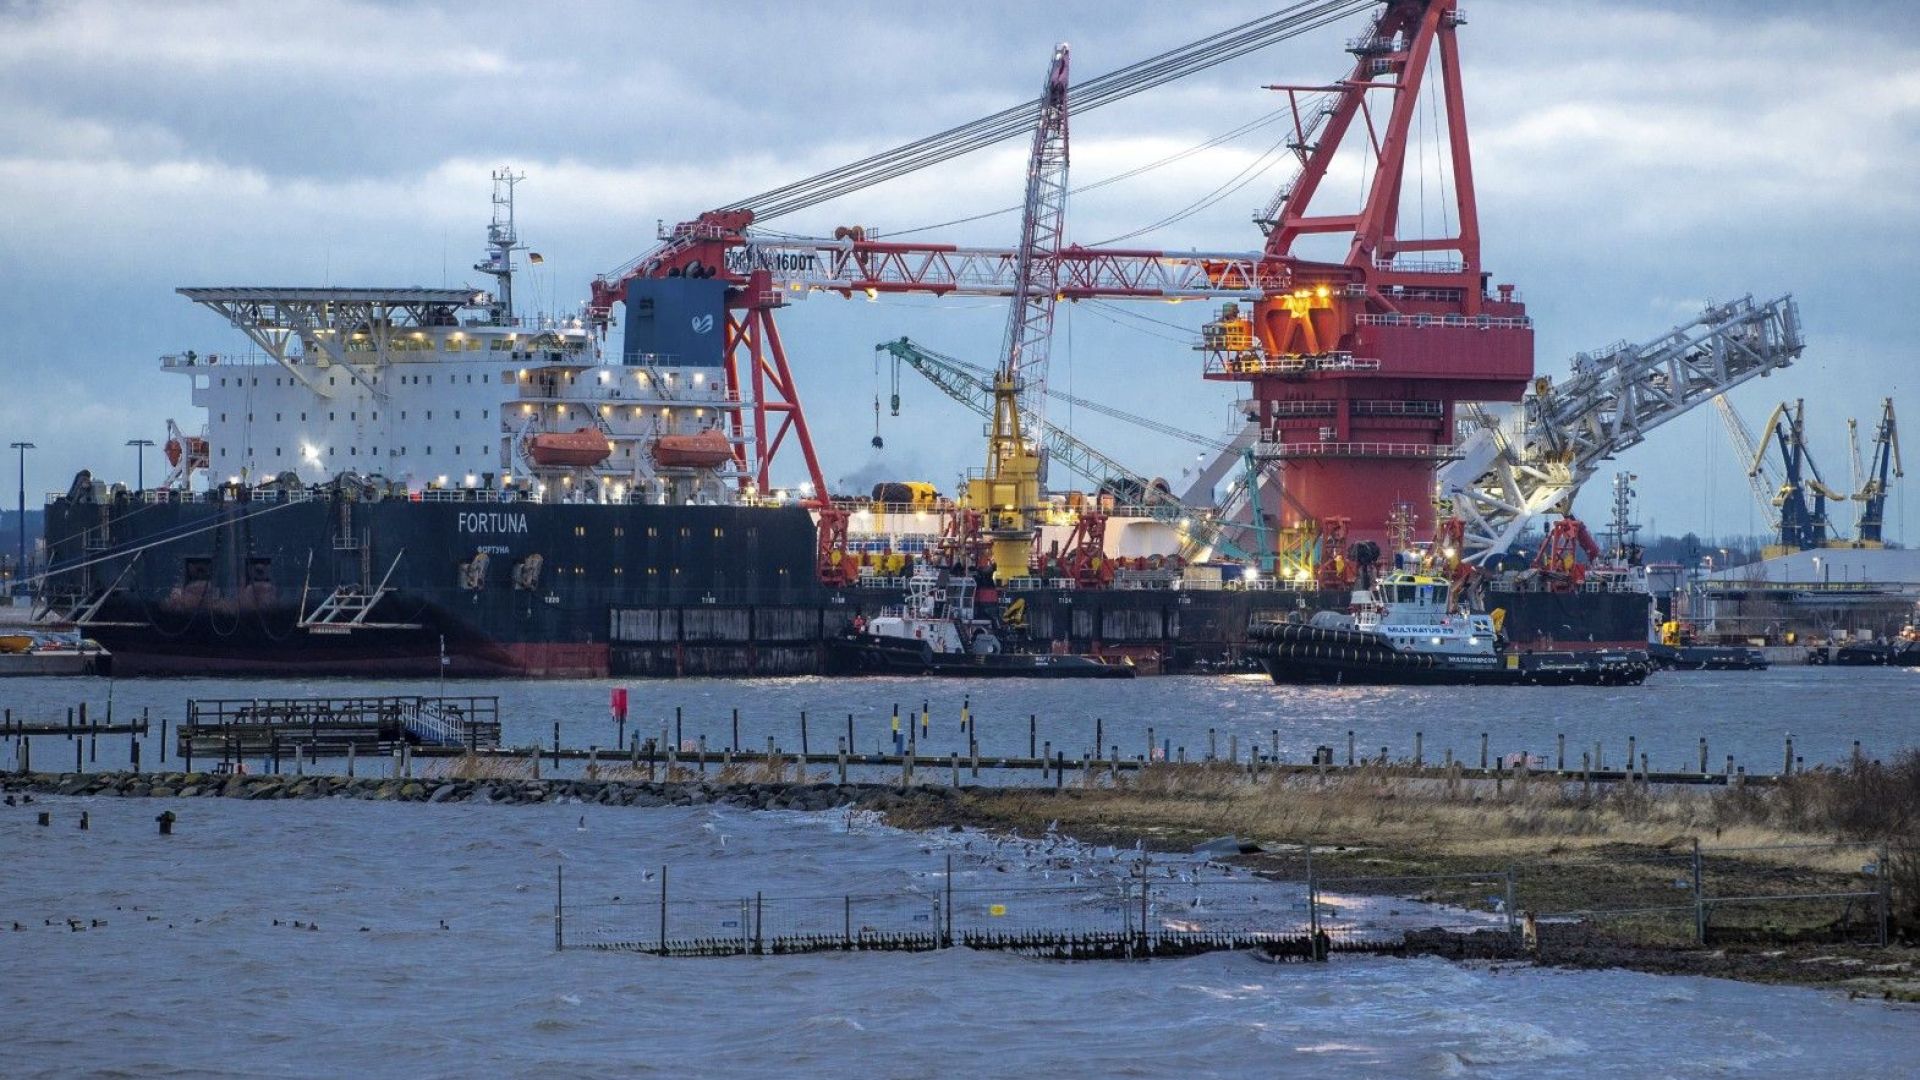 Полша започна да строи газопровода "Балтик пайп" по дъното на Балтийско море